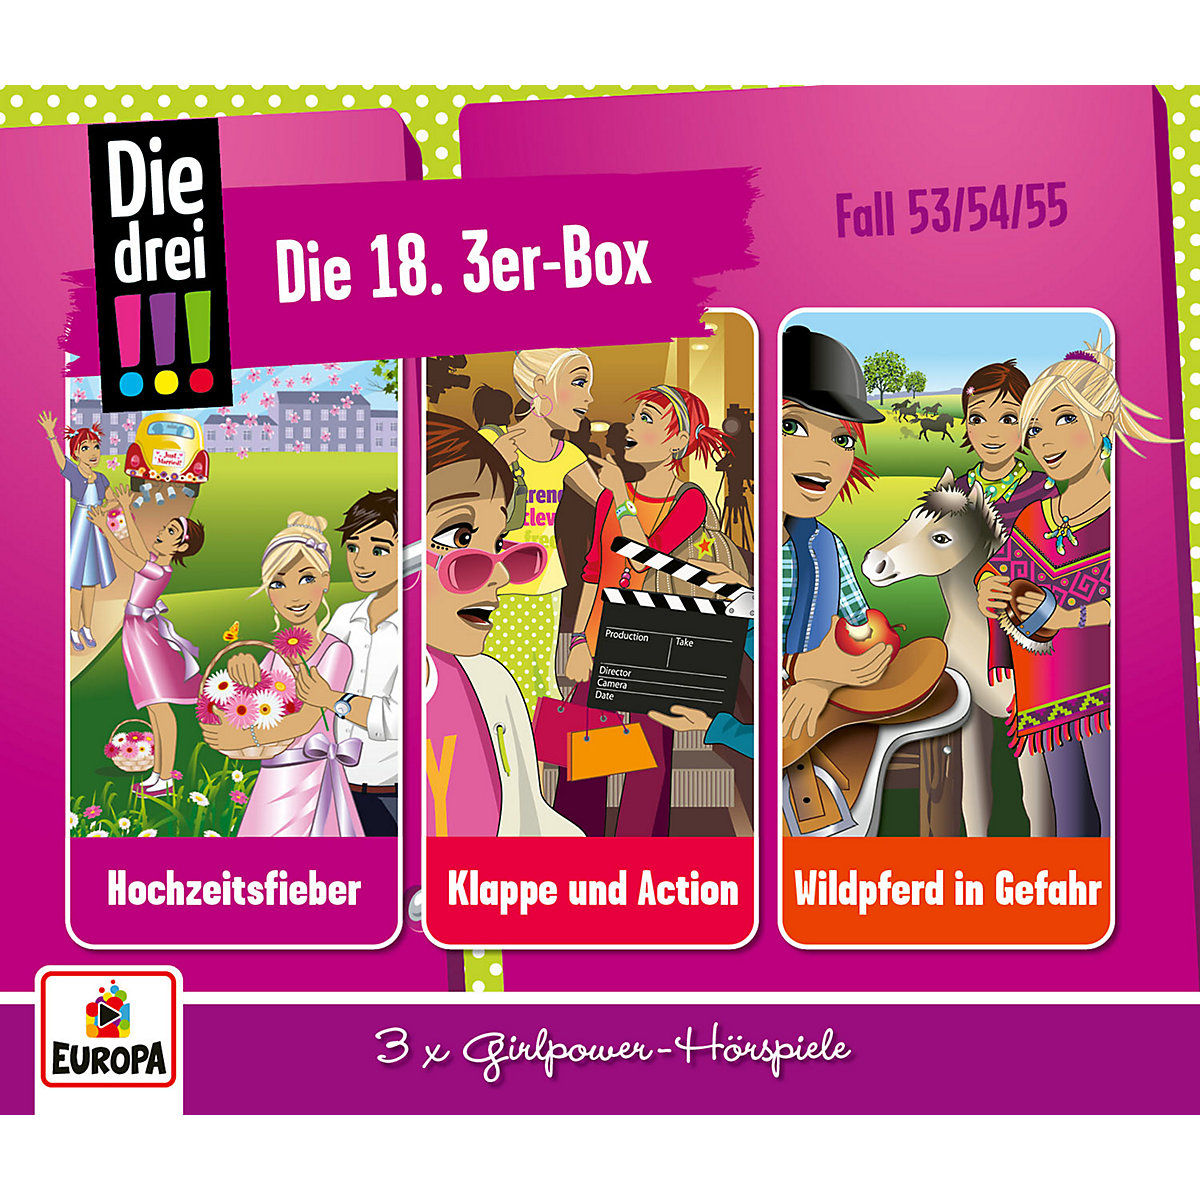 CD Die drei !!! 3er CD-Box 18 (3 CDs, Folgen 53,54,55), Die drei